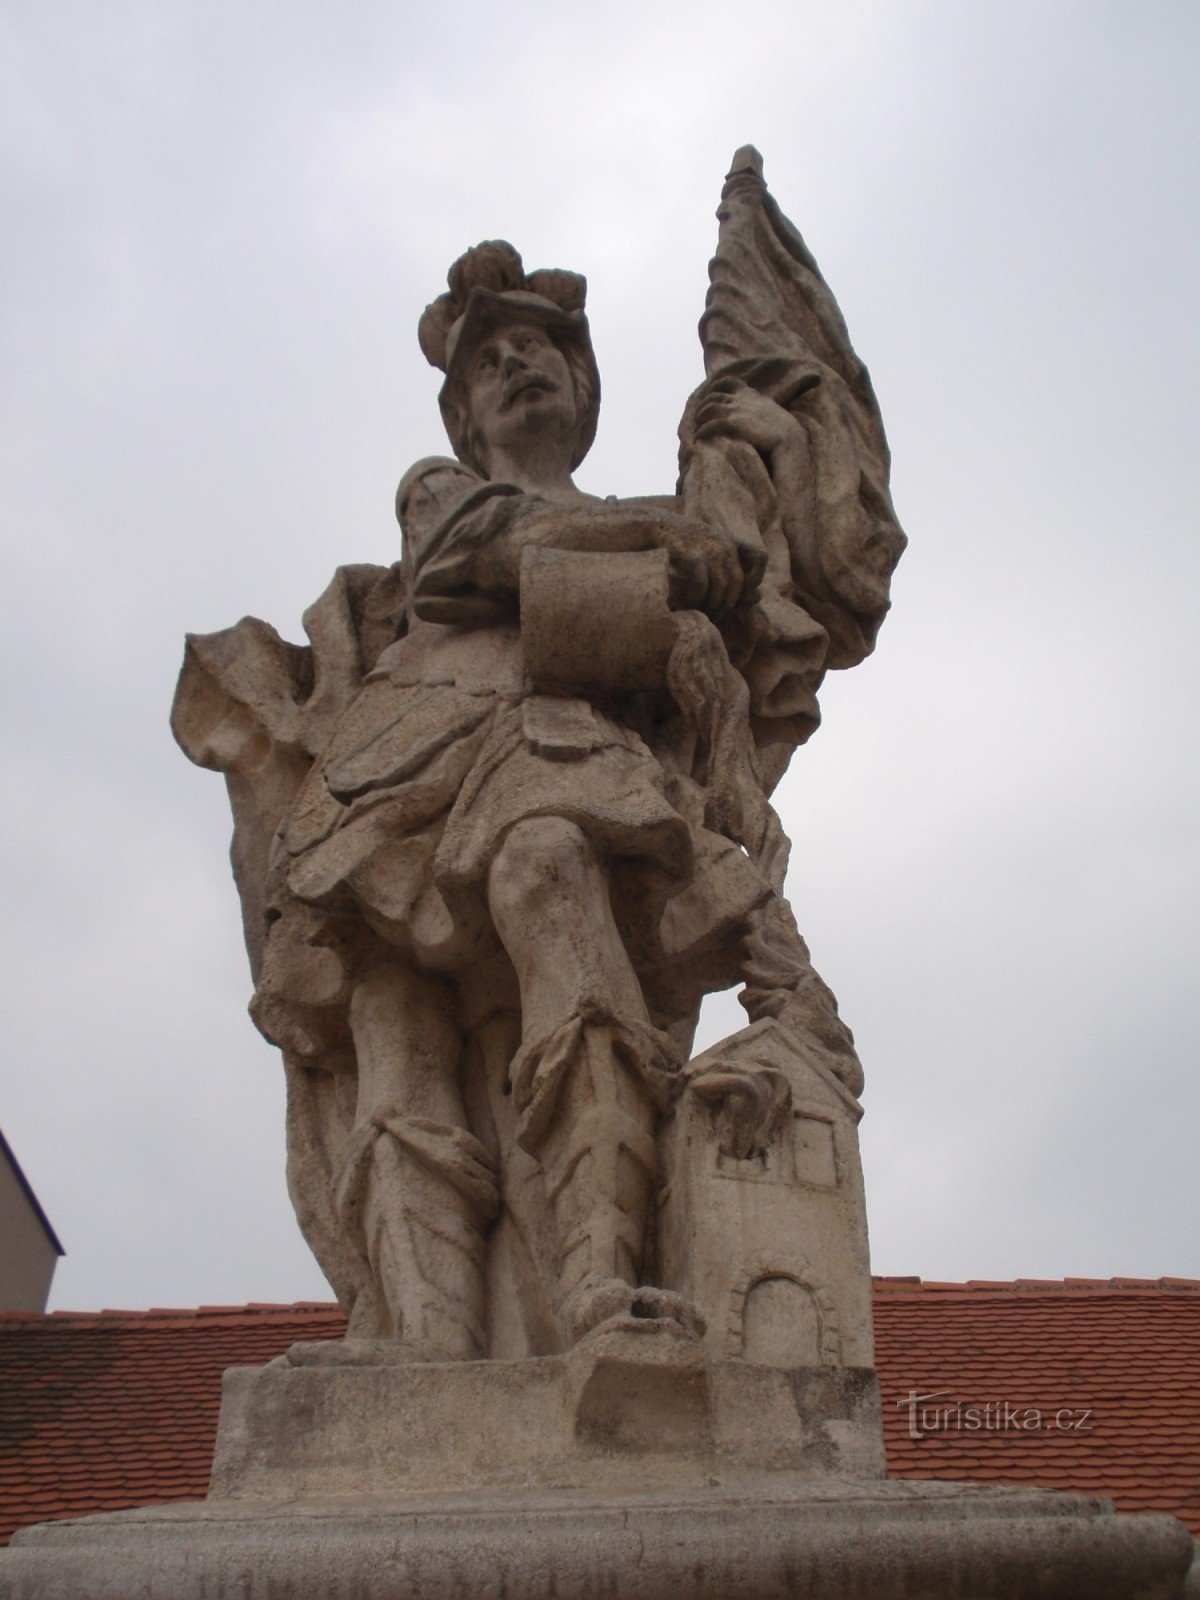 Baroque sculptures in Miroslav